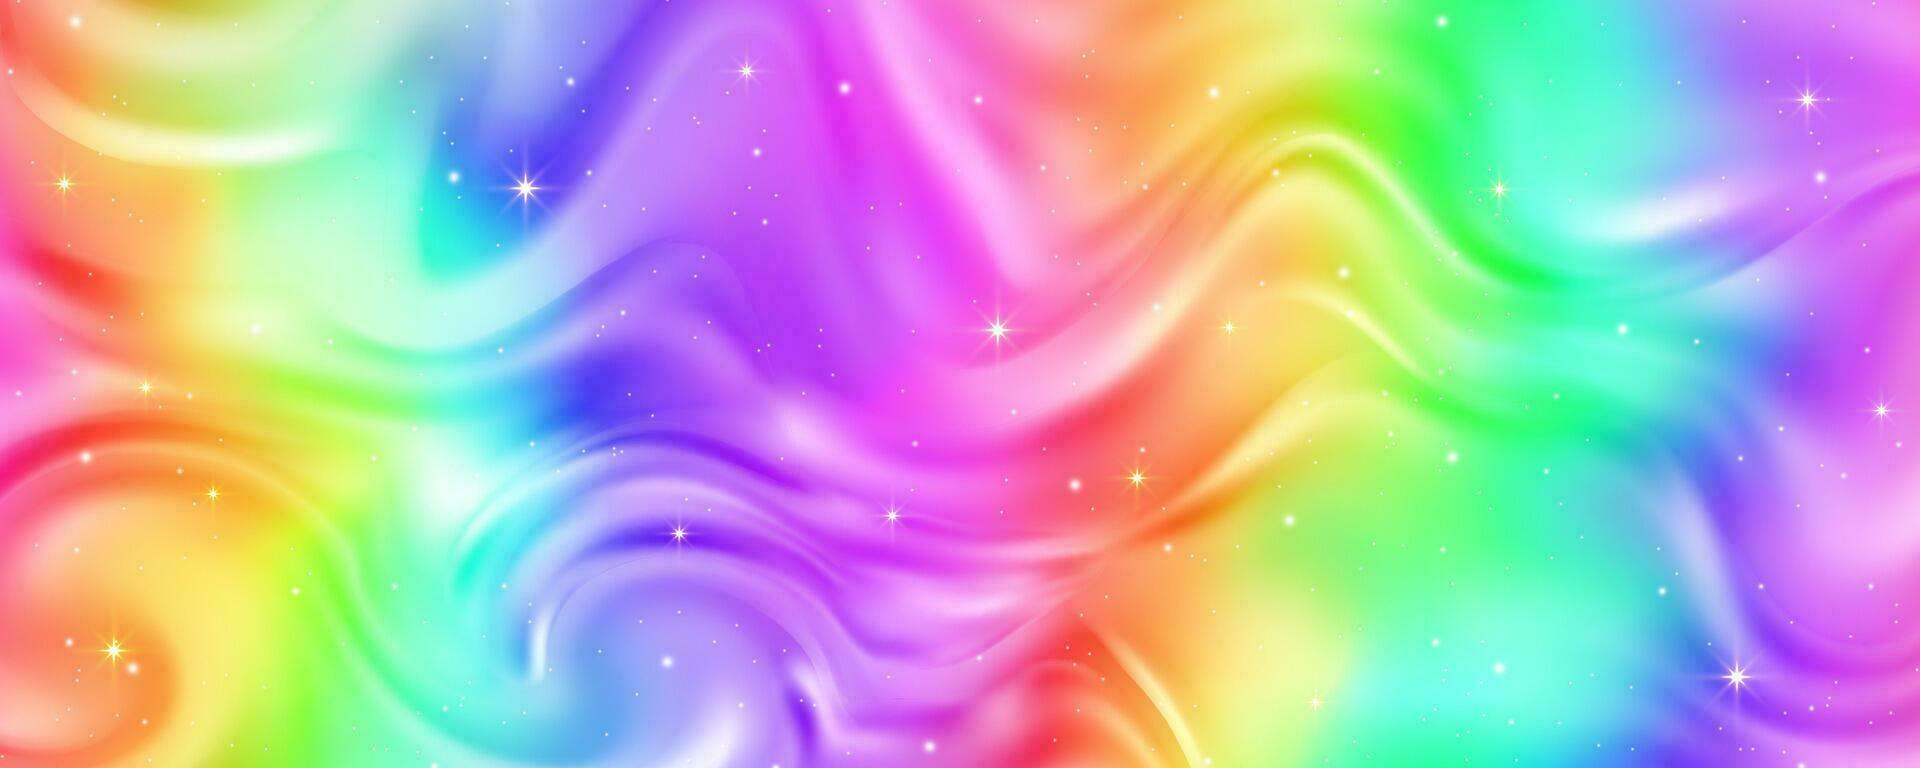 regenboog achtergrond met golven van vloeistof. abstract pastel helling behang met helder levendig kleuren en sterren. vector eenhoorn holografische achtergrond.